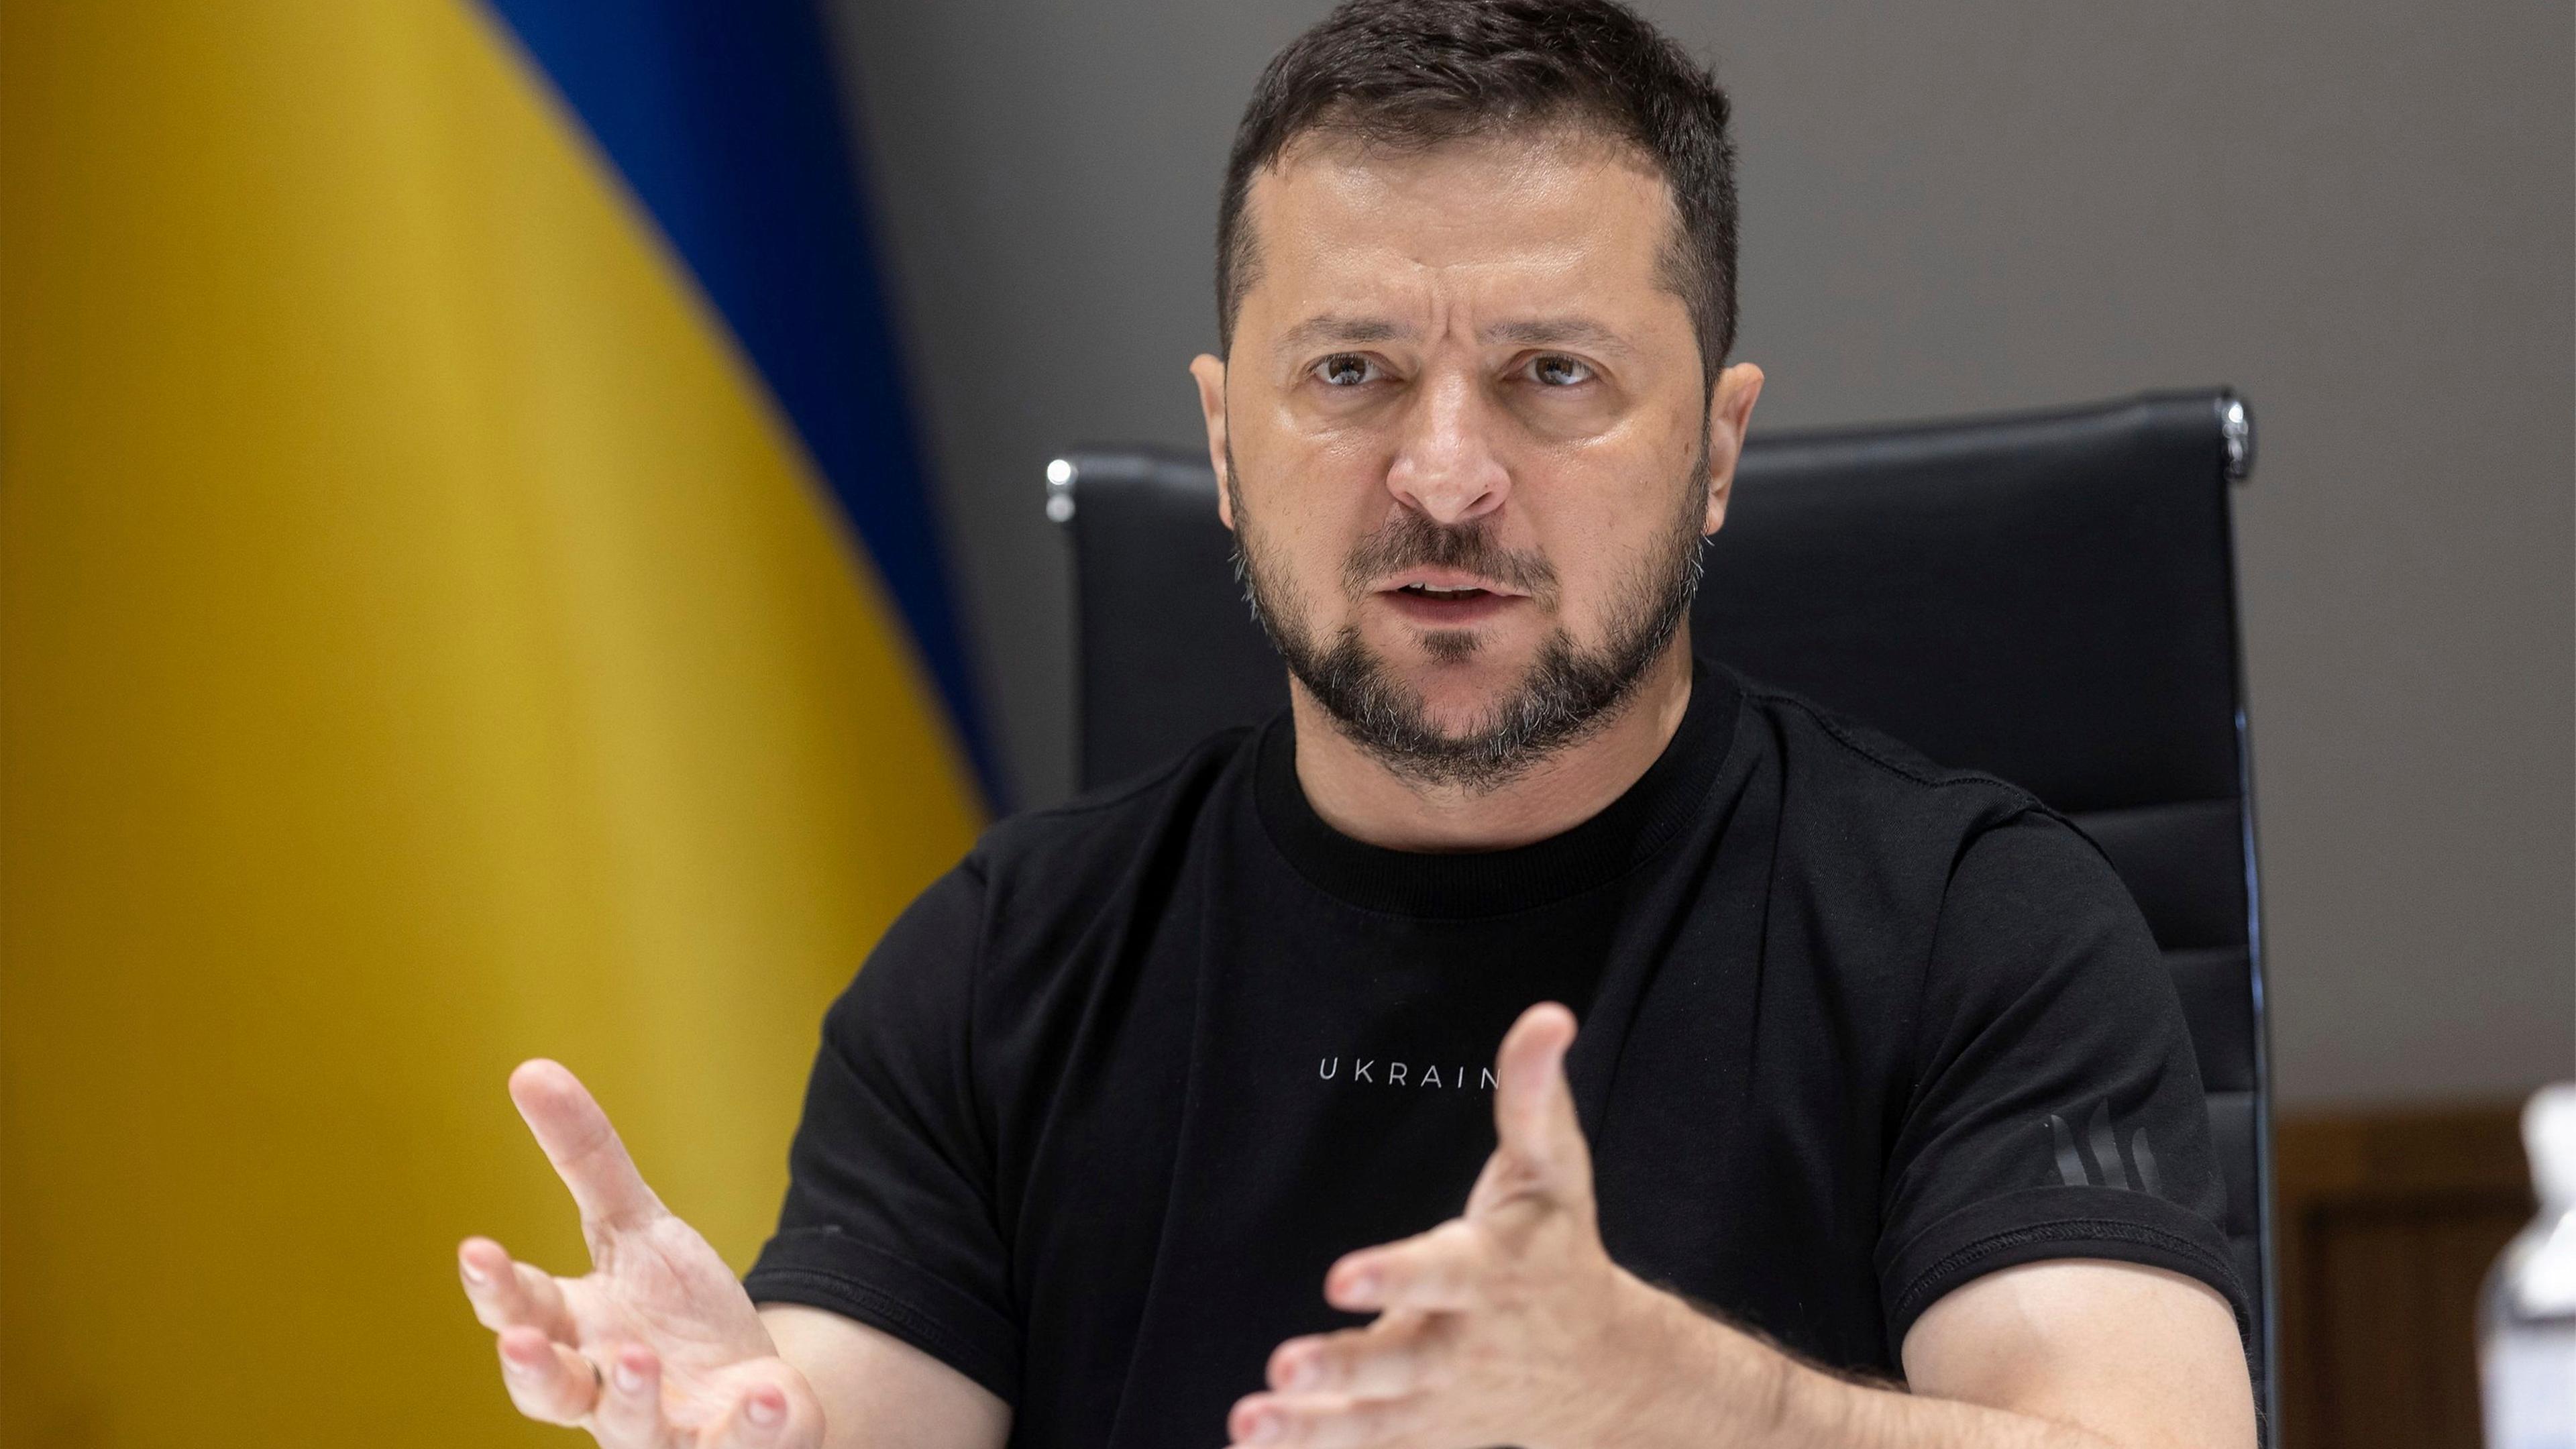 Wolodymyr Selenskyj spricht vor einer ukrainischen Flagge